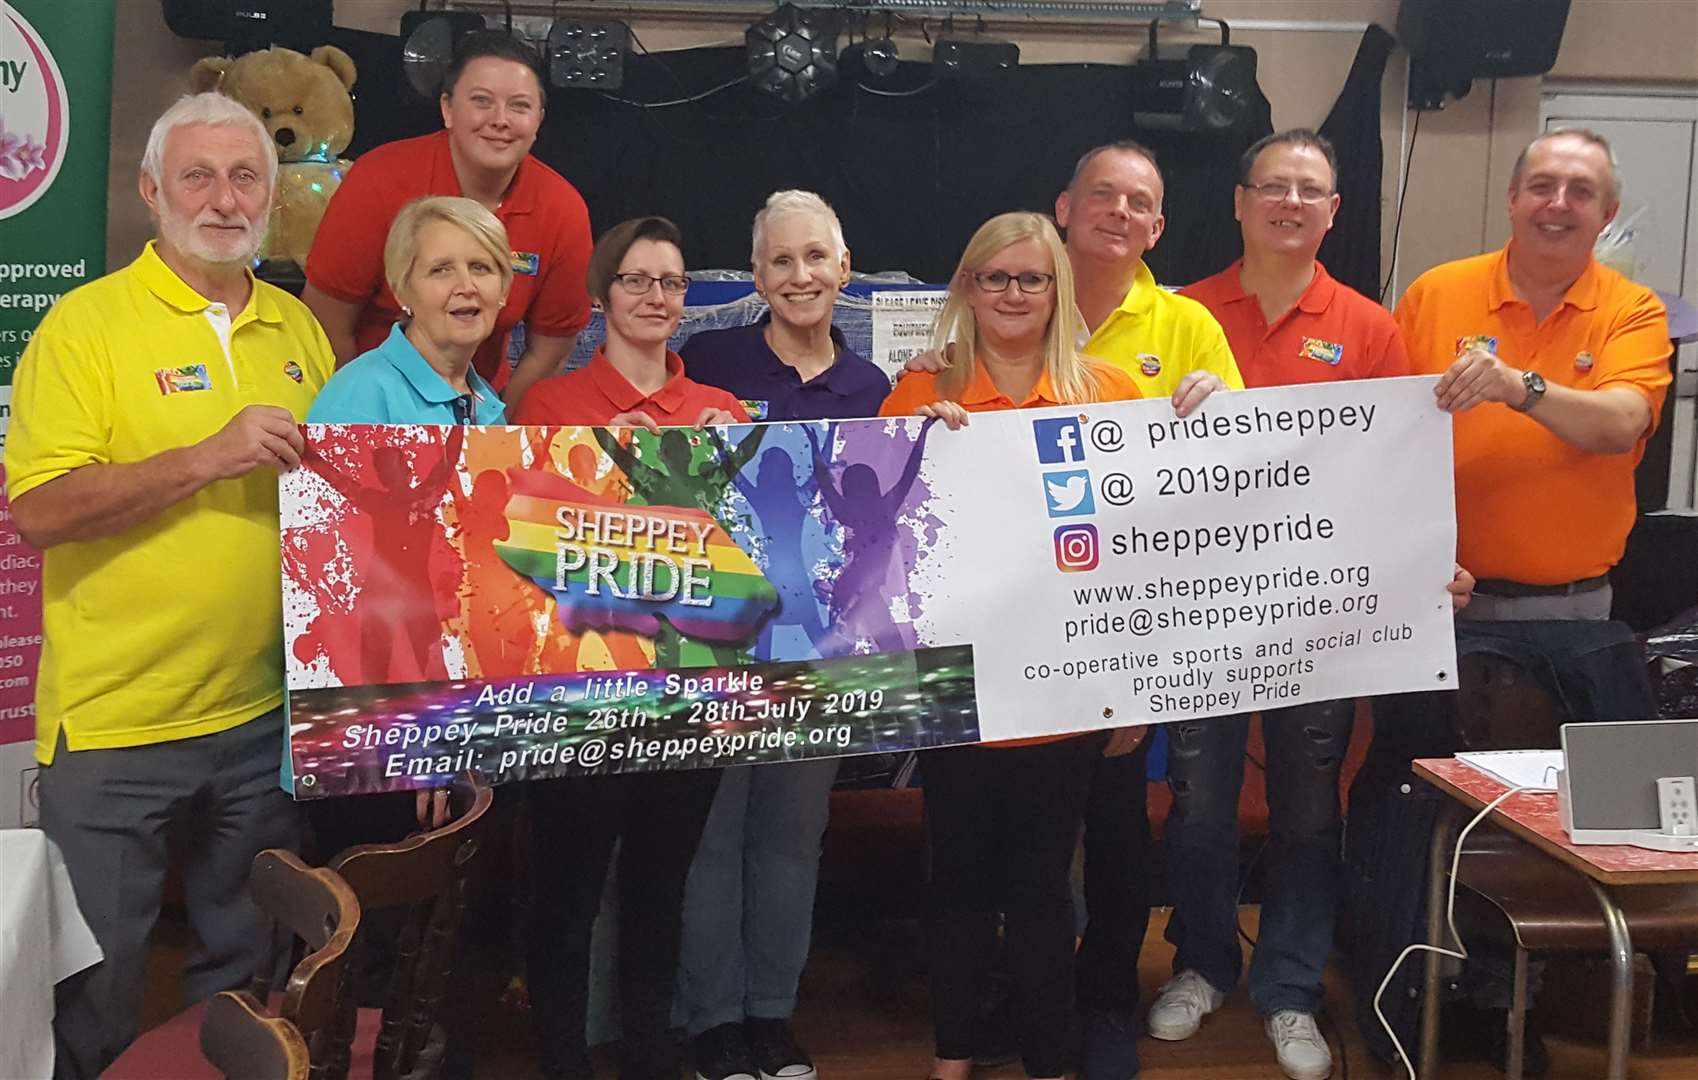 Sheppey Pride committee members